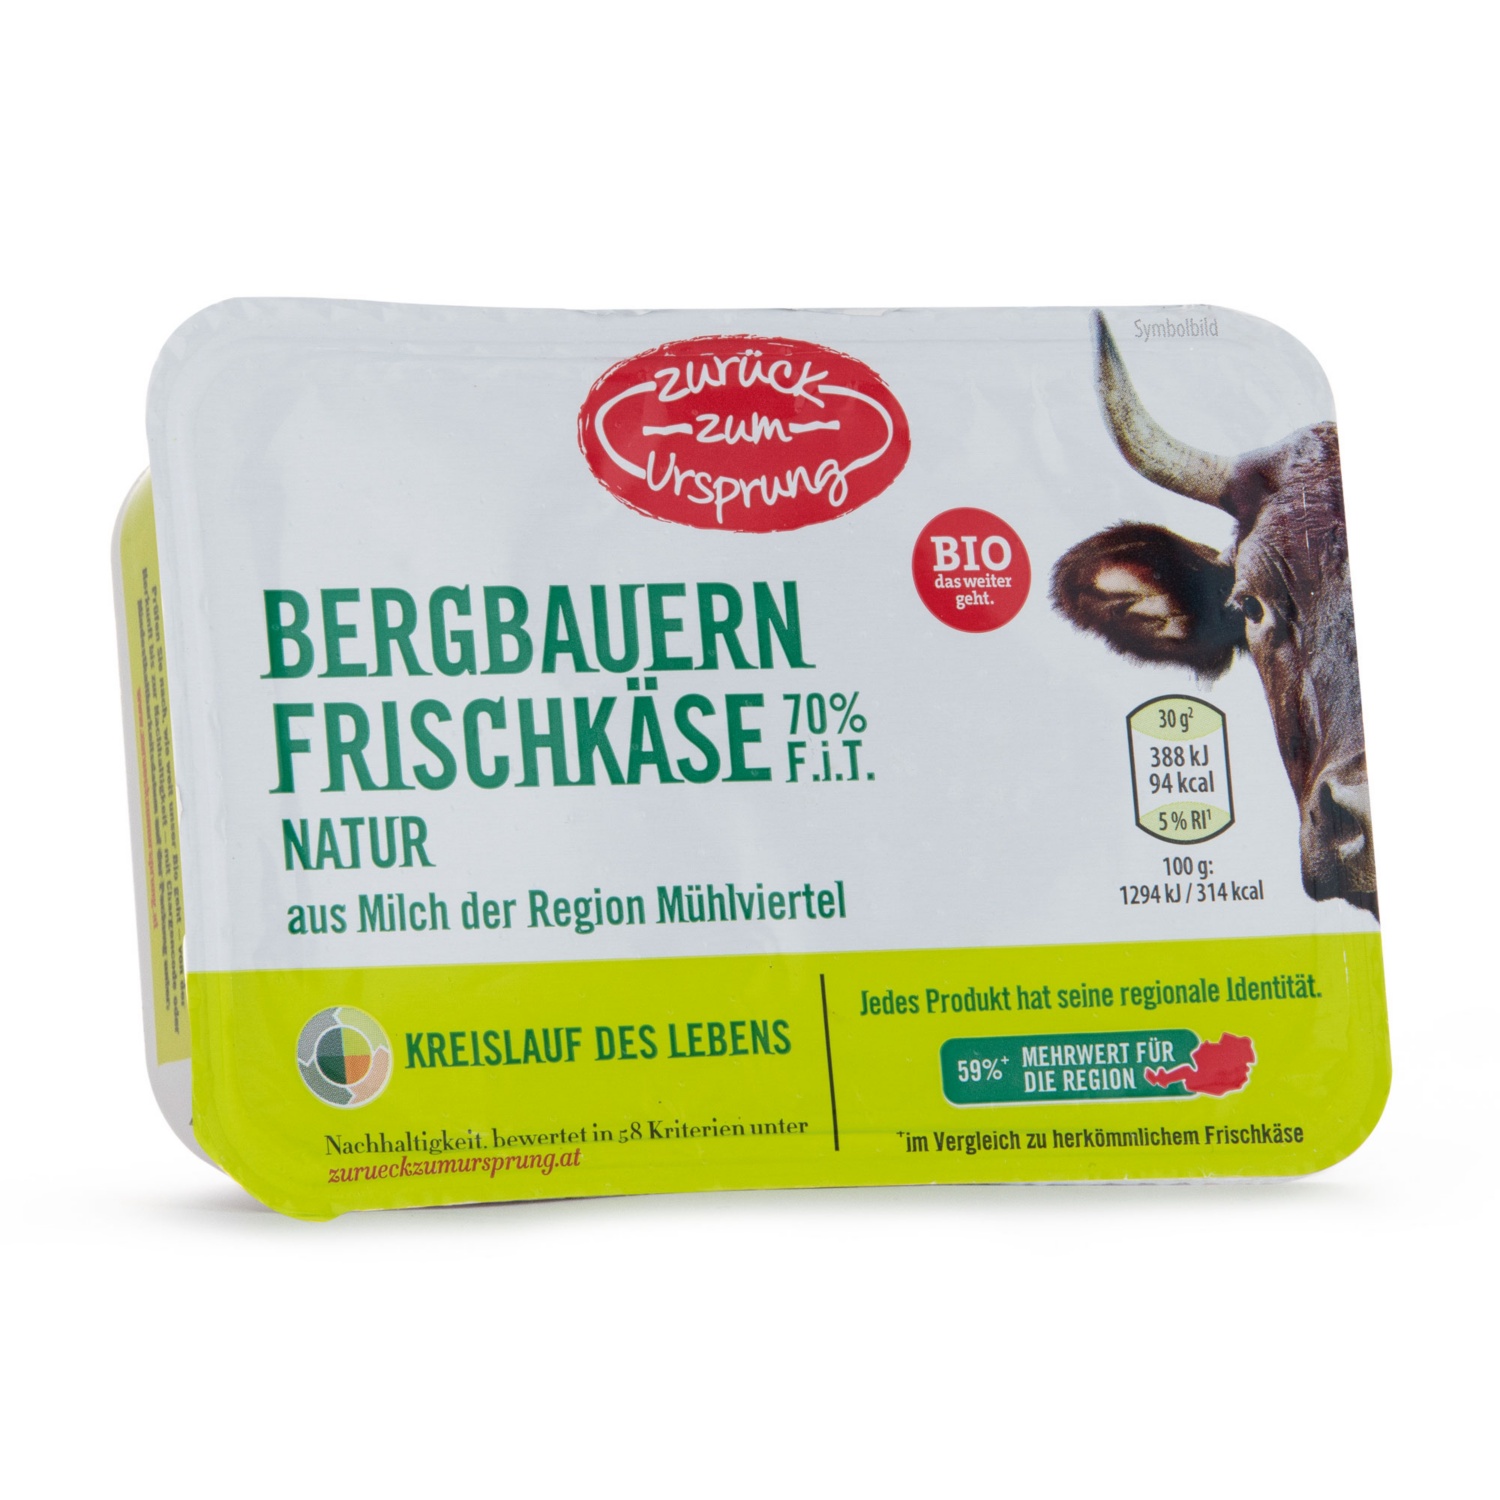 ZURÜCK ZUM URSPRUNG BIO-Bergbauern-Frischkäse, Natur 70%